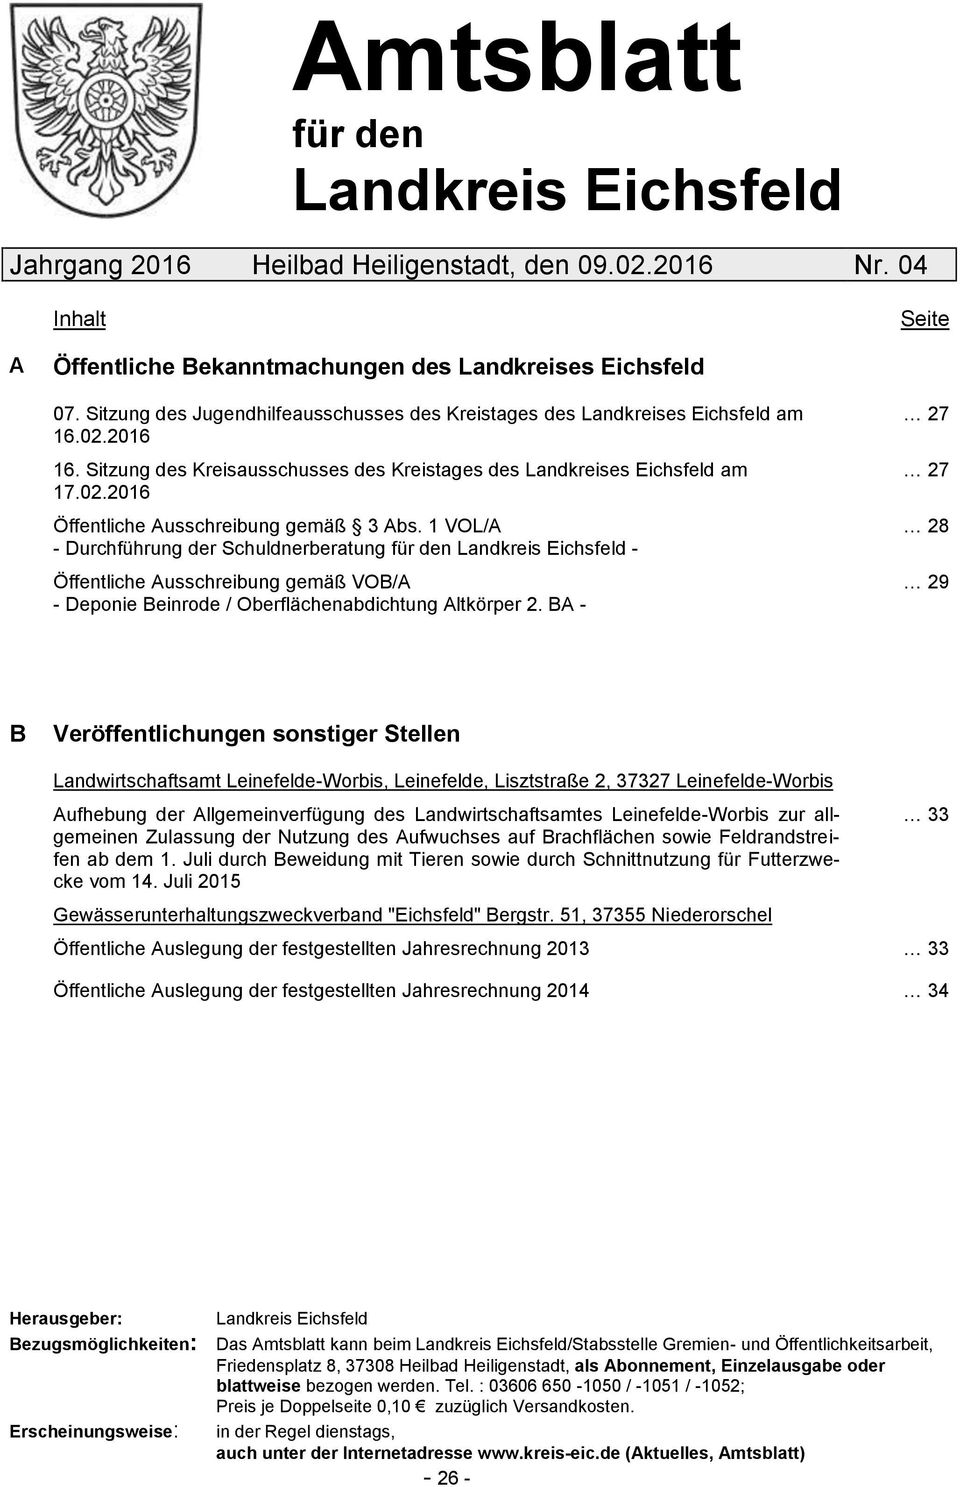 1 VOL/A - Durchführung der Schuldnerberatung für den Landkreis Eichsfeld - Öffentliche Ausschreibung gemäß VOB/A - Deponie Beinrode / Oberflächenabdichtung Altkörper 2.